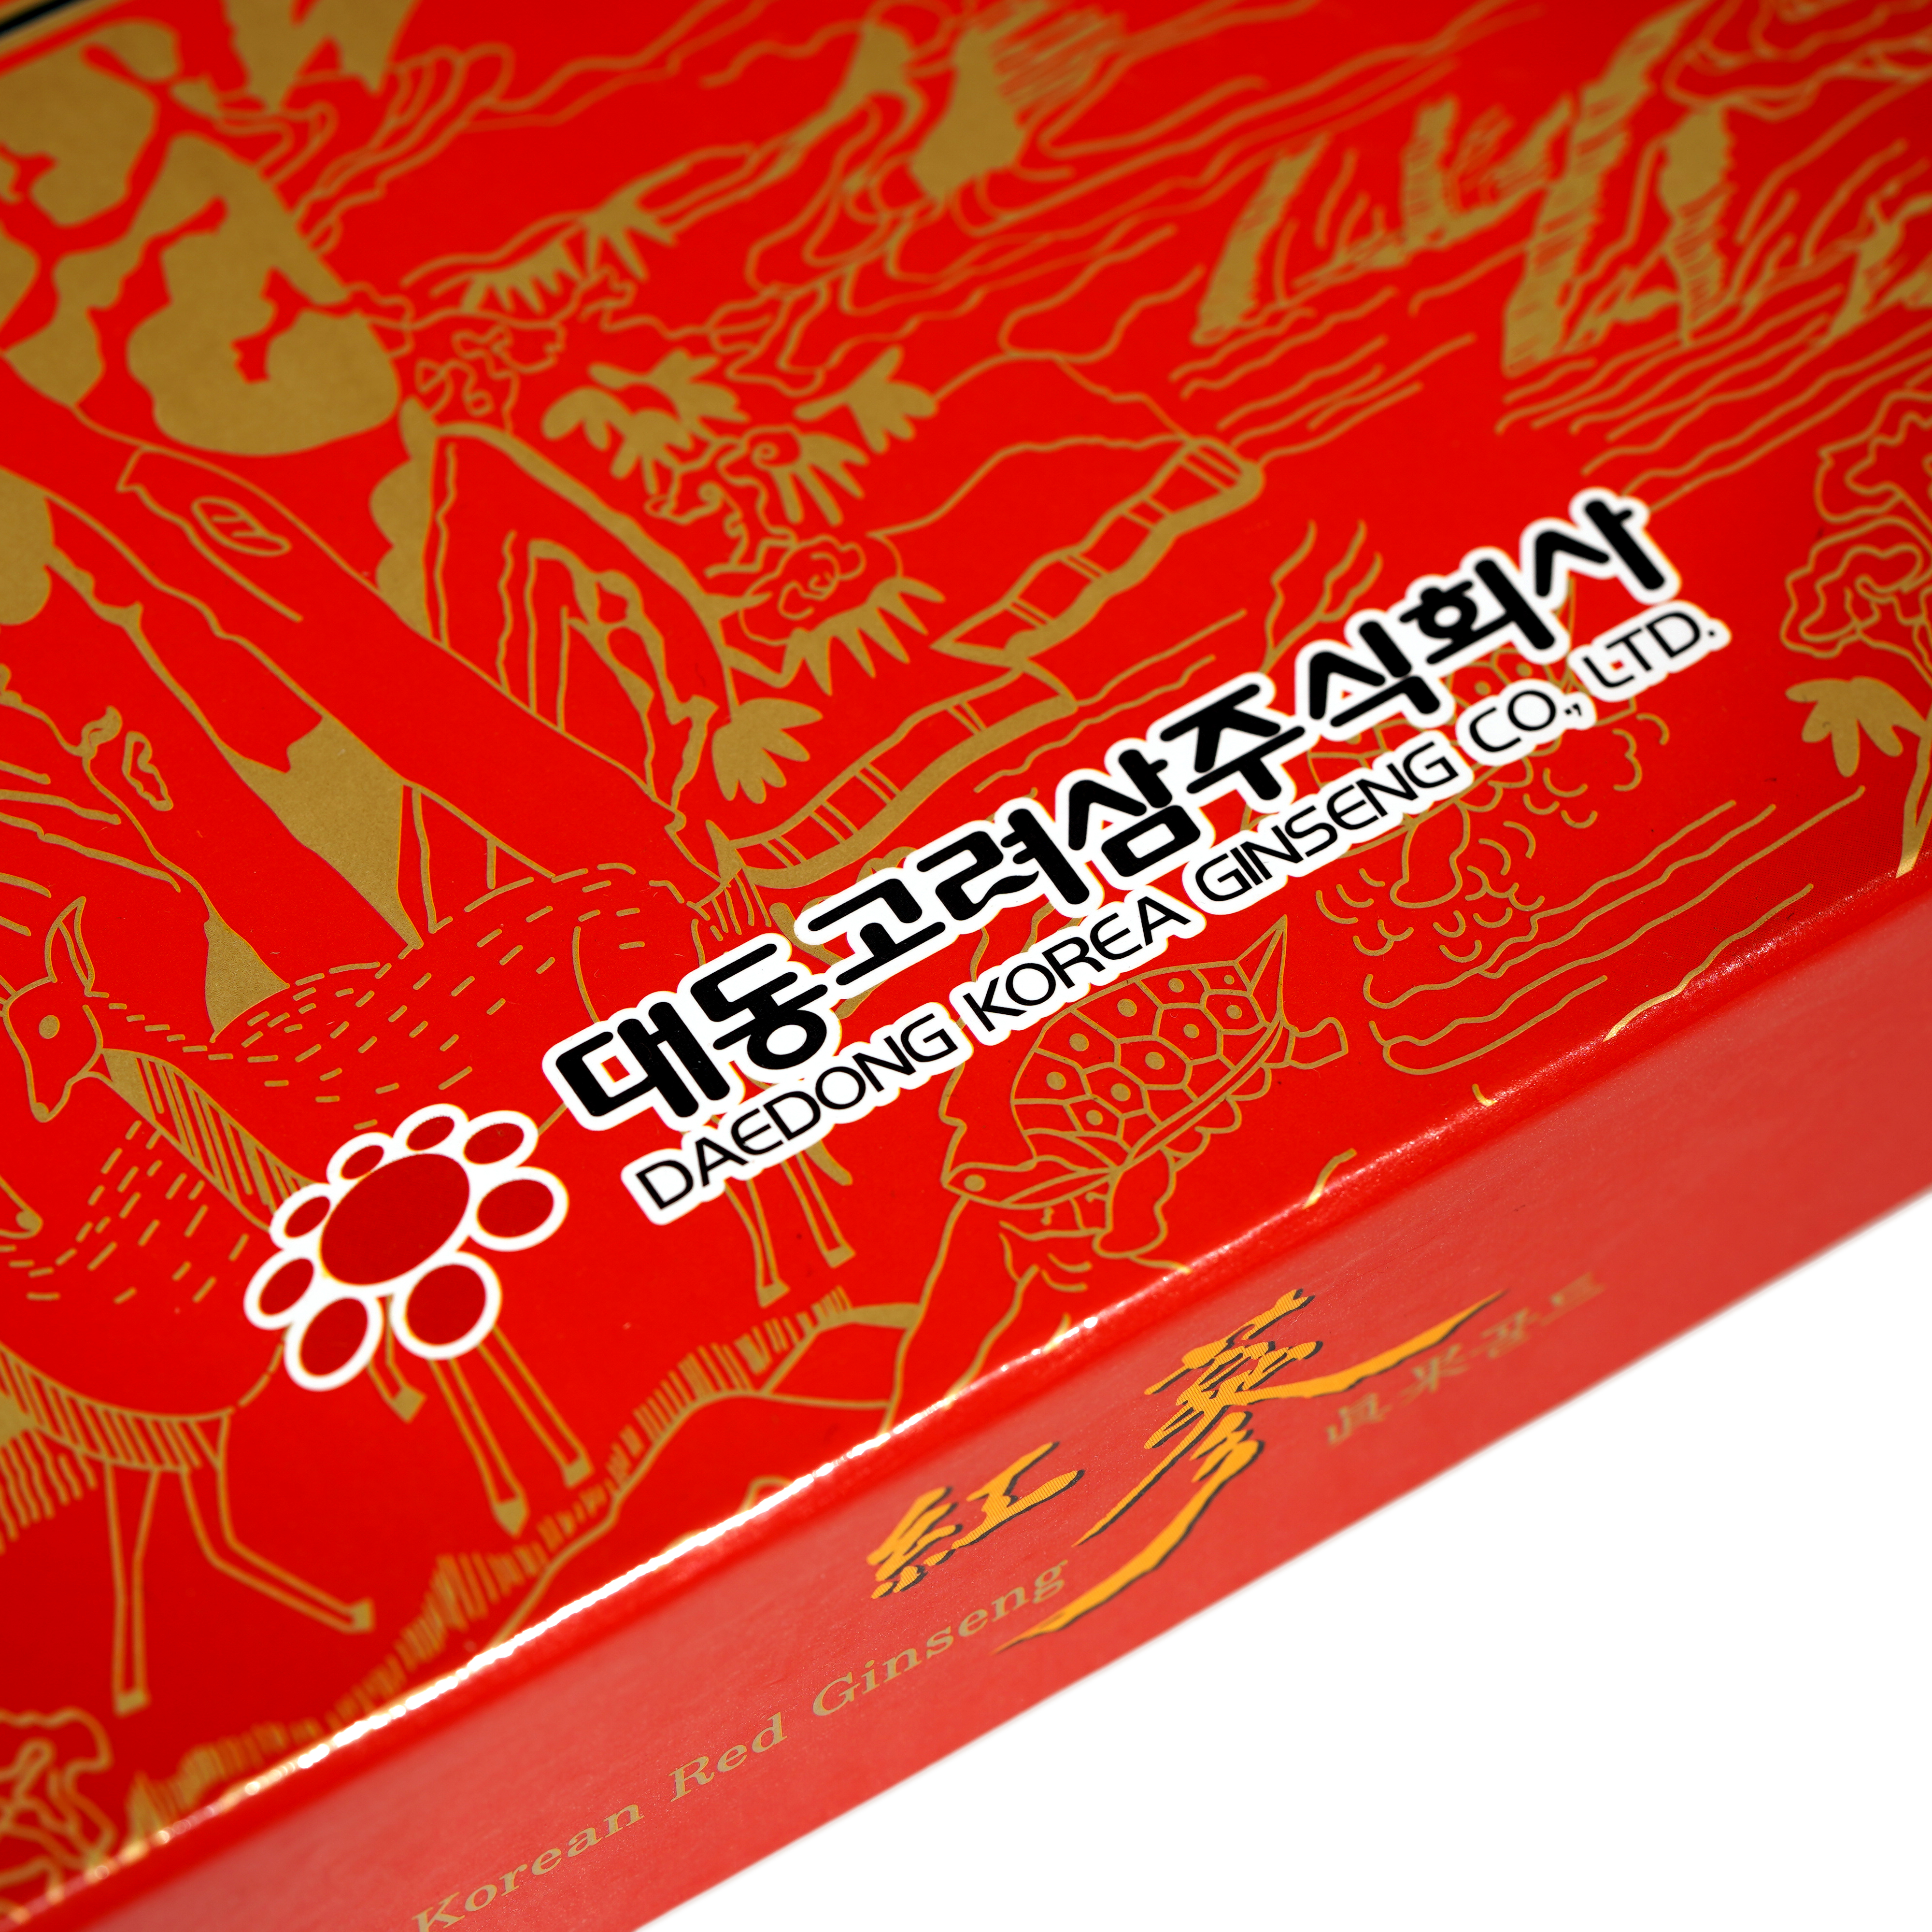 MUA 4 Hồng sâm Hàn quốc nguyên củ tẩm mật ong 300gram TẶNG 1 Trà sâm dạng bột 100 gói - Daedong Korea Ginseng